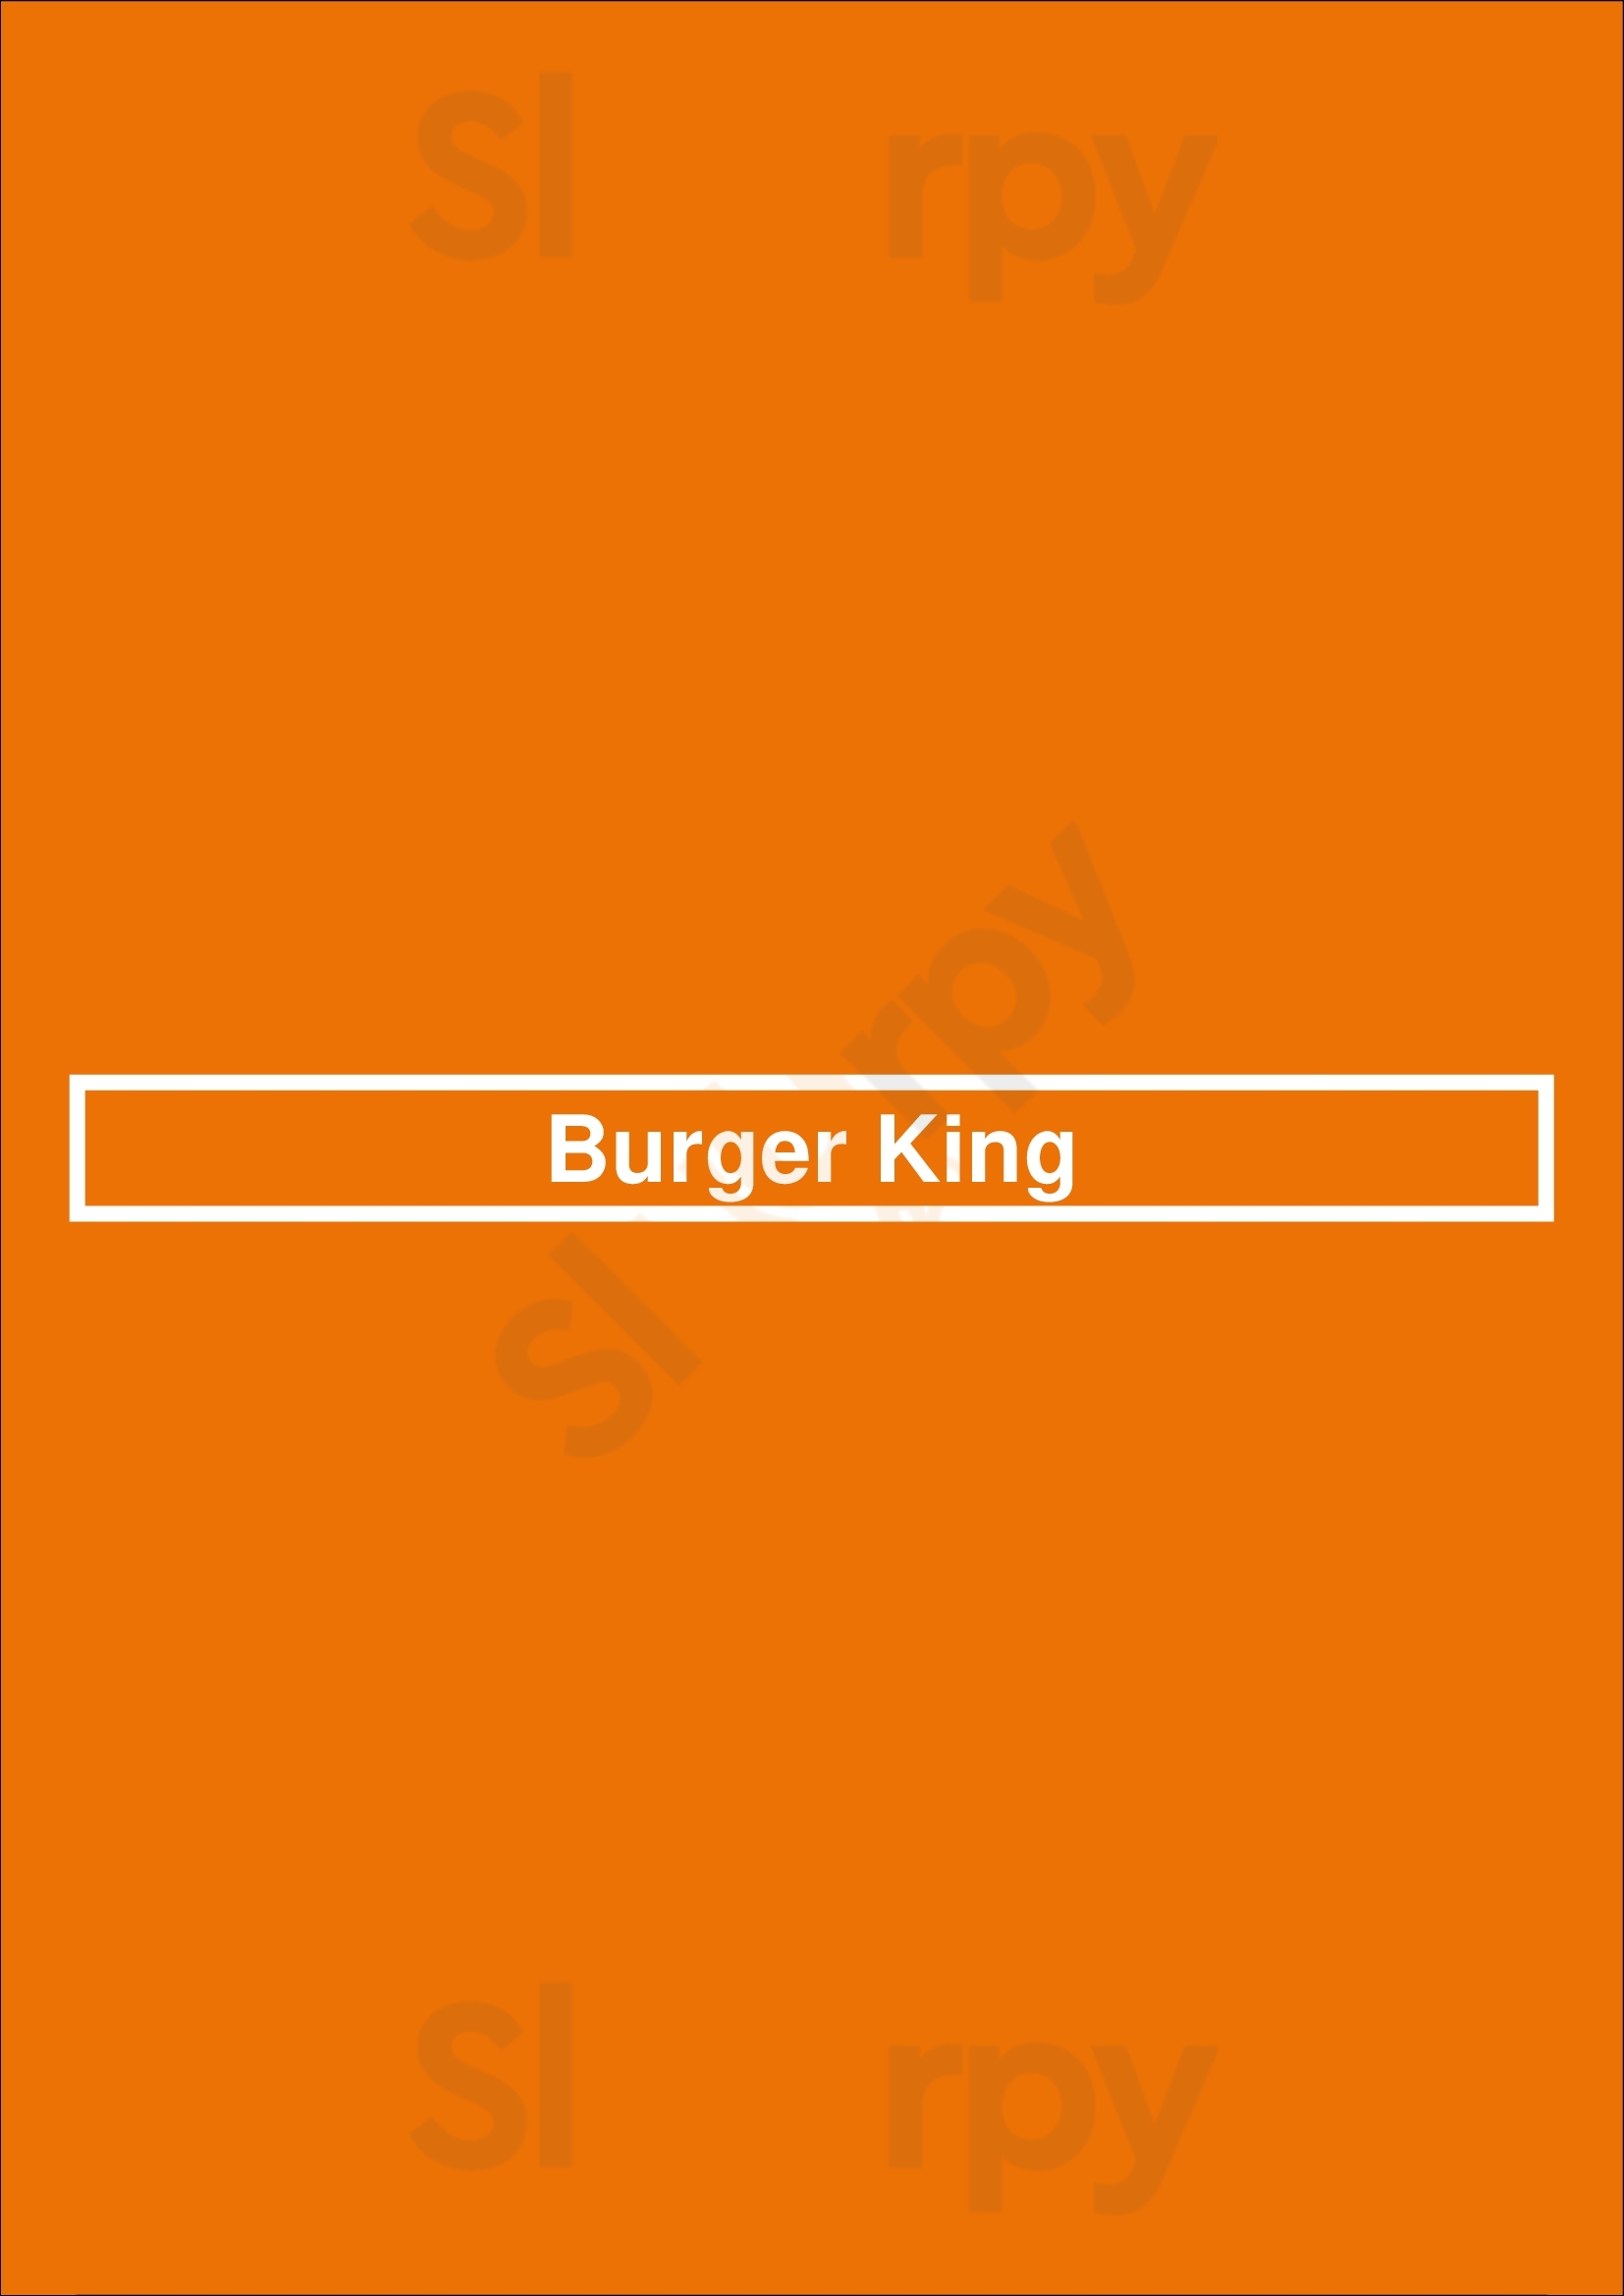 Burger King San Diego Menu - 1